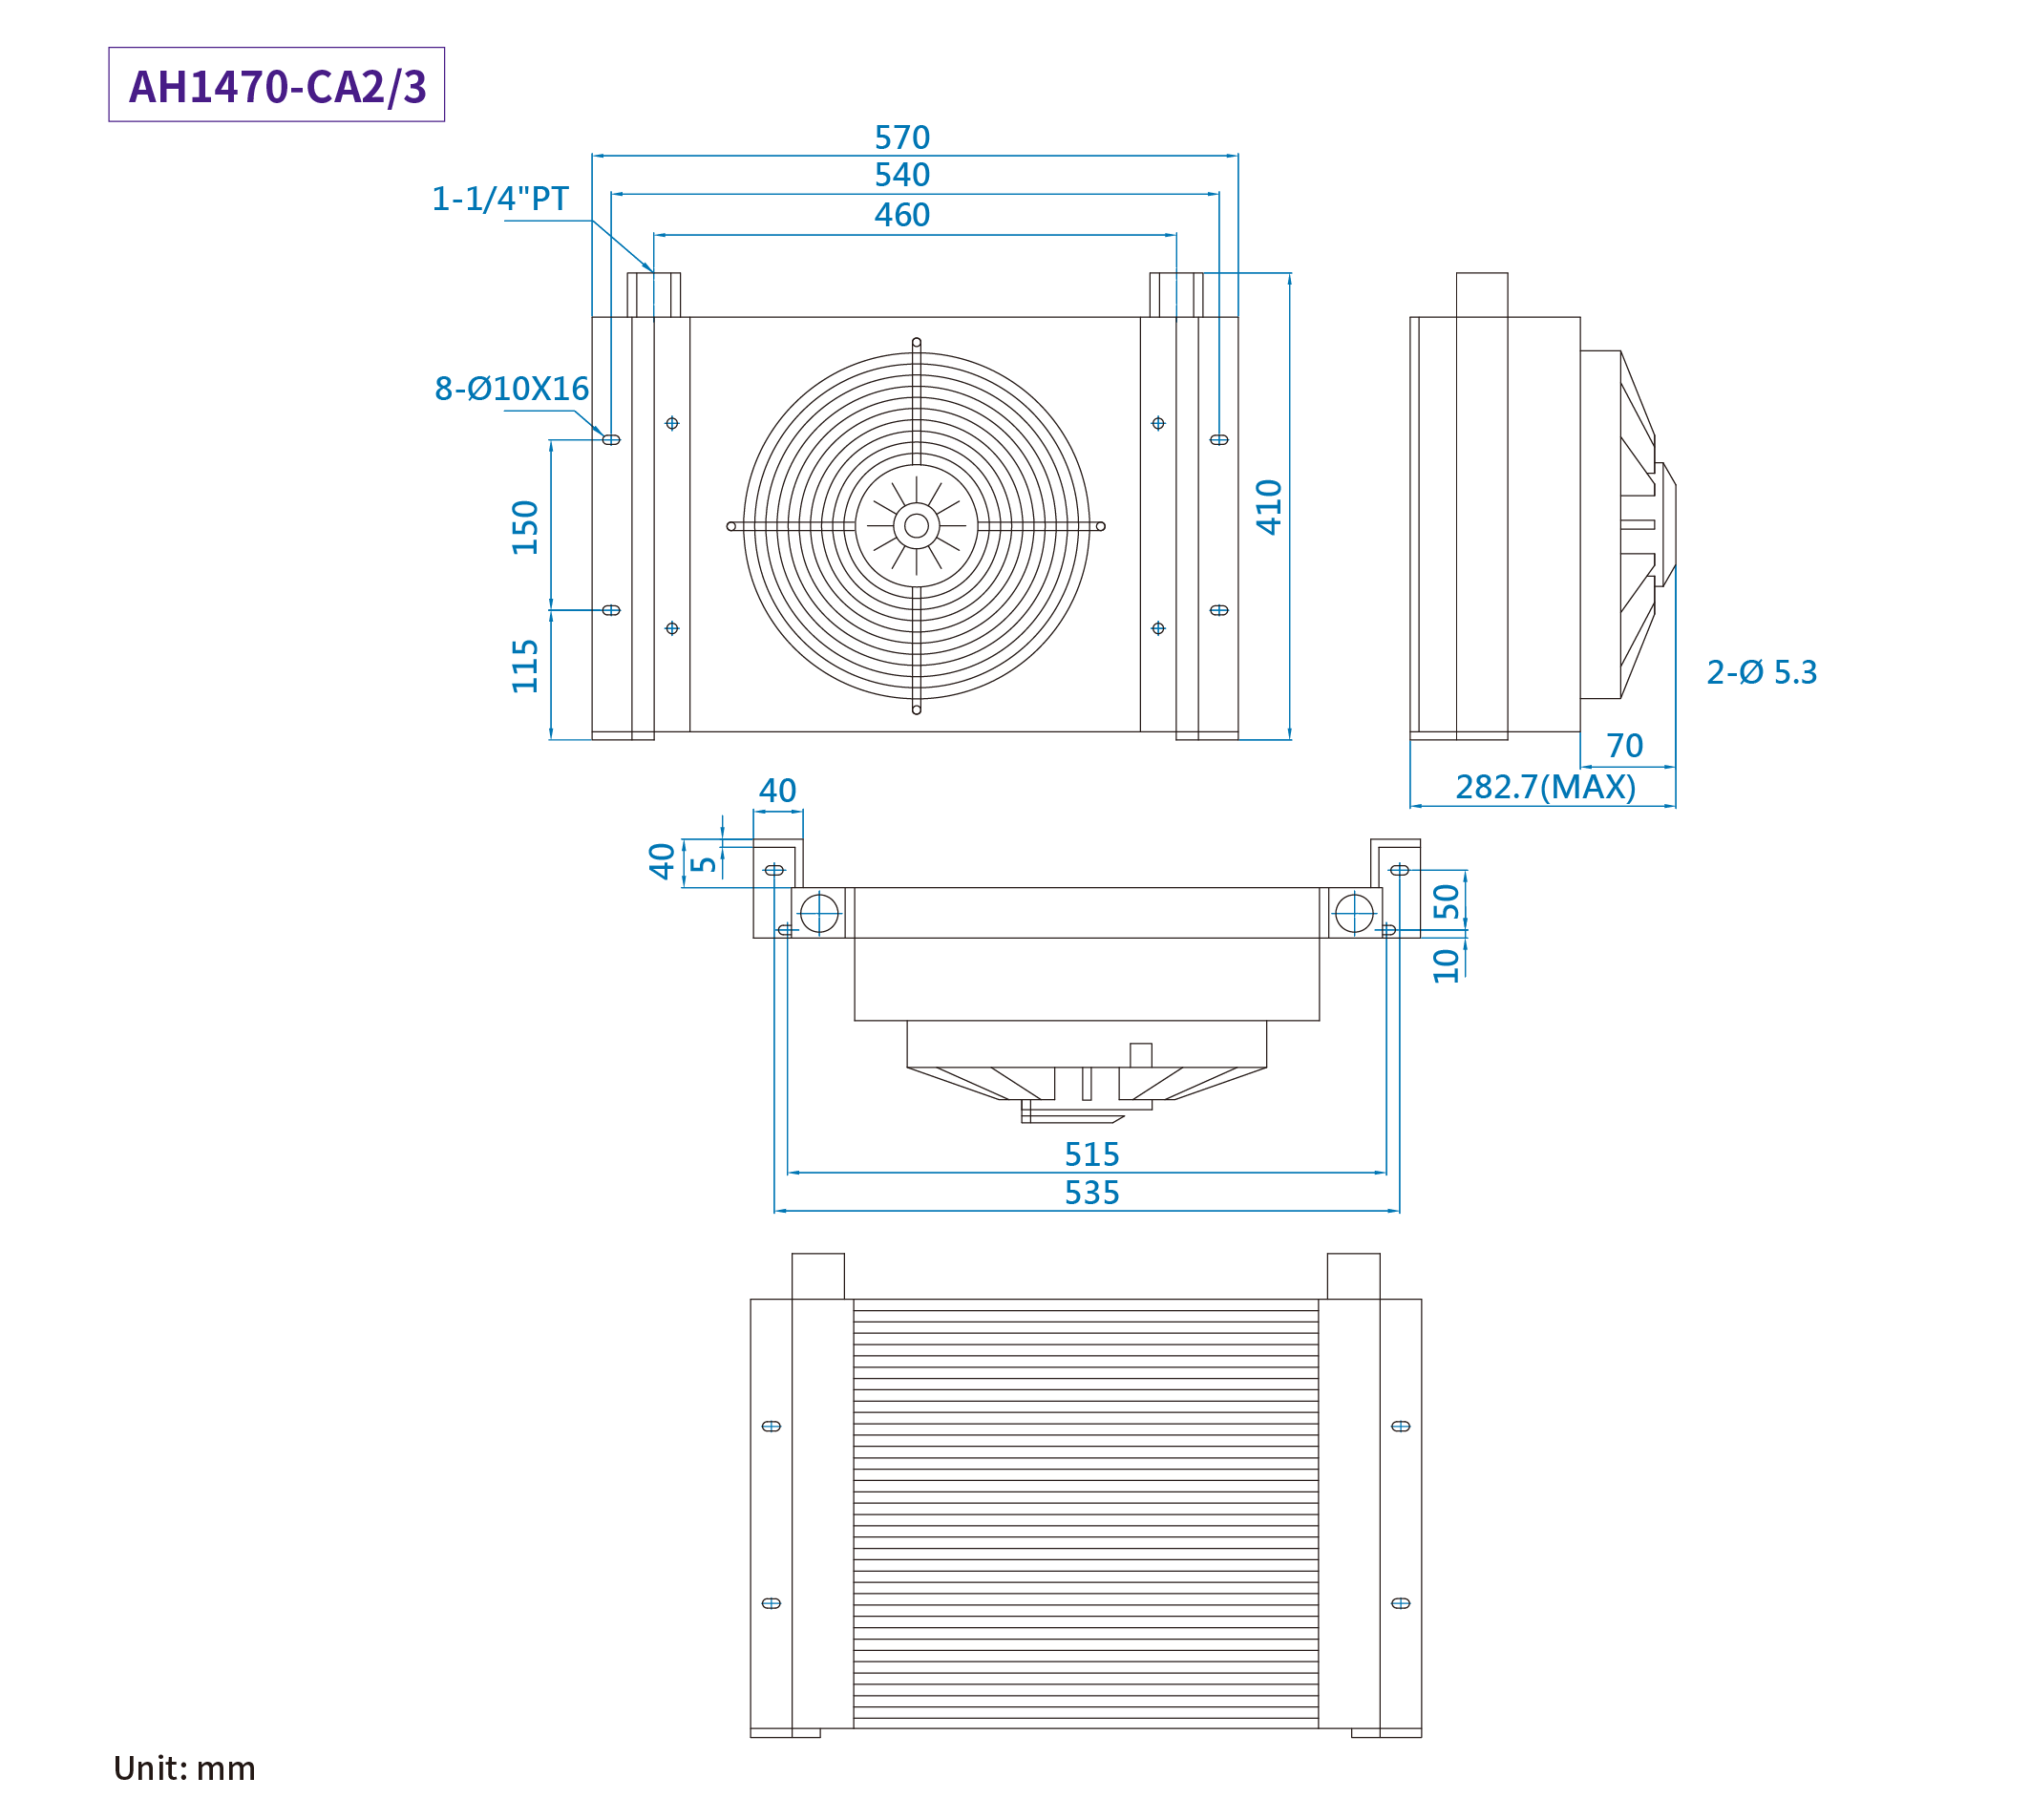 CMLMedium &amp; summus pressura aer refrigeratus coolers, mensurae, dimensio AH1470-CA2/3